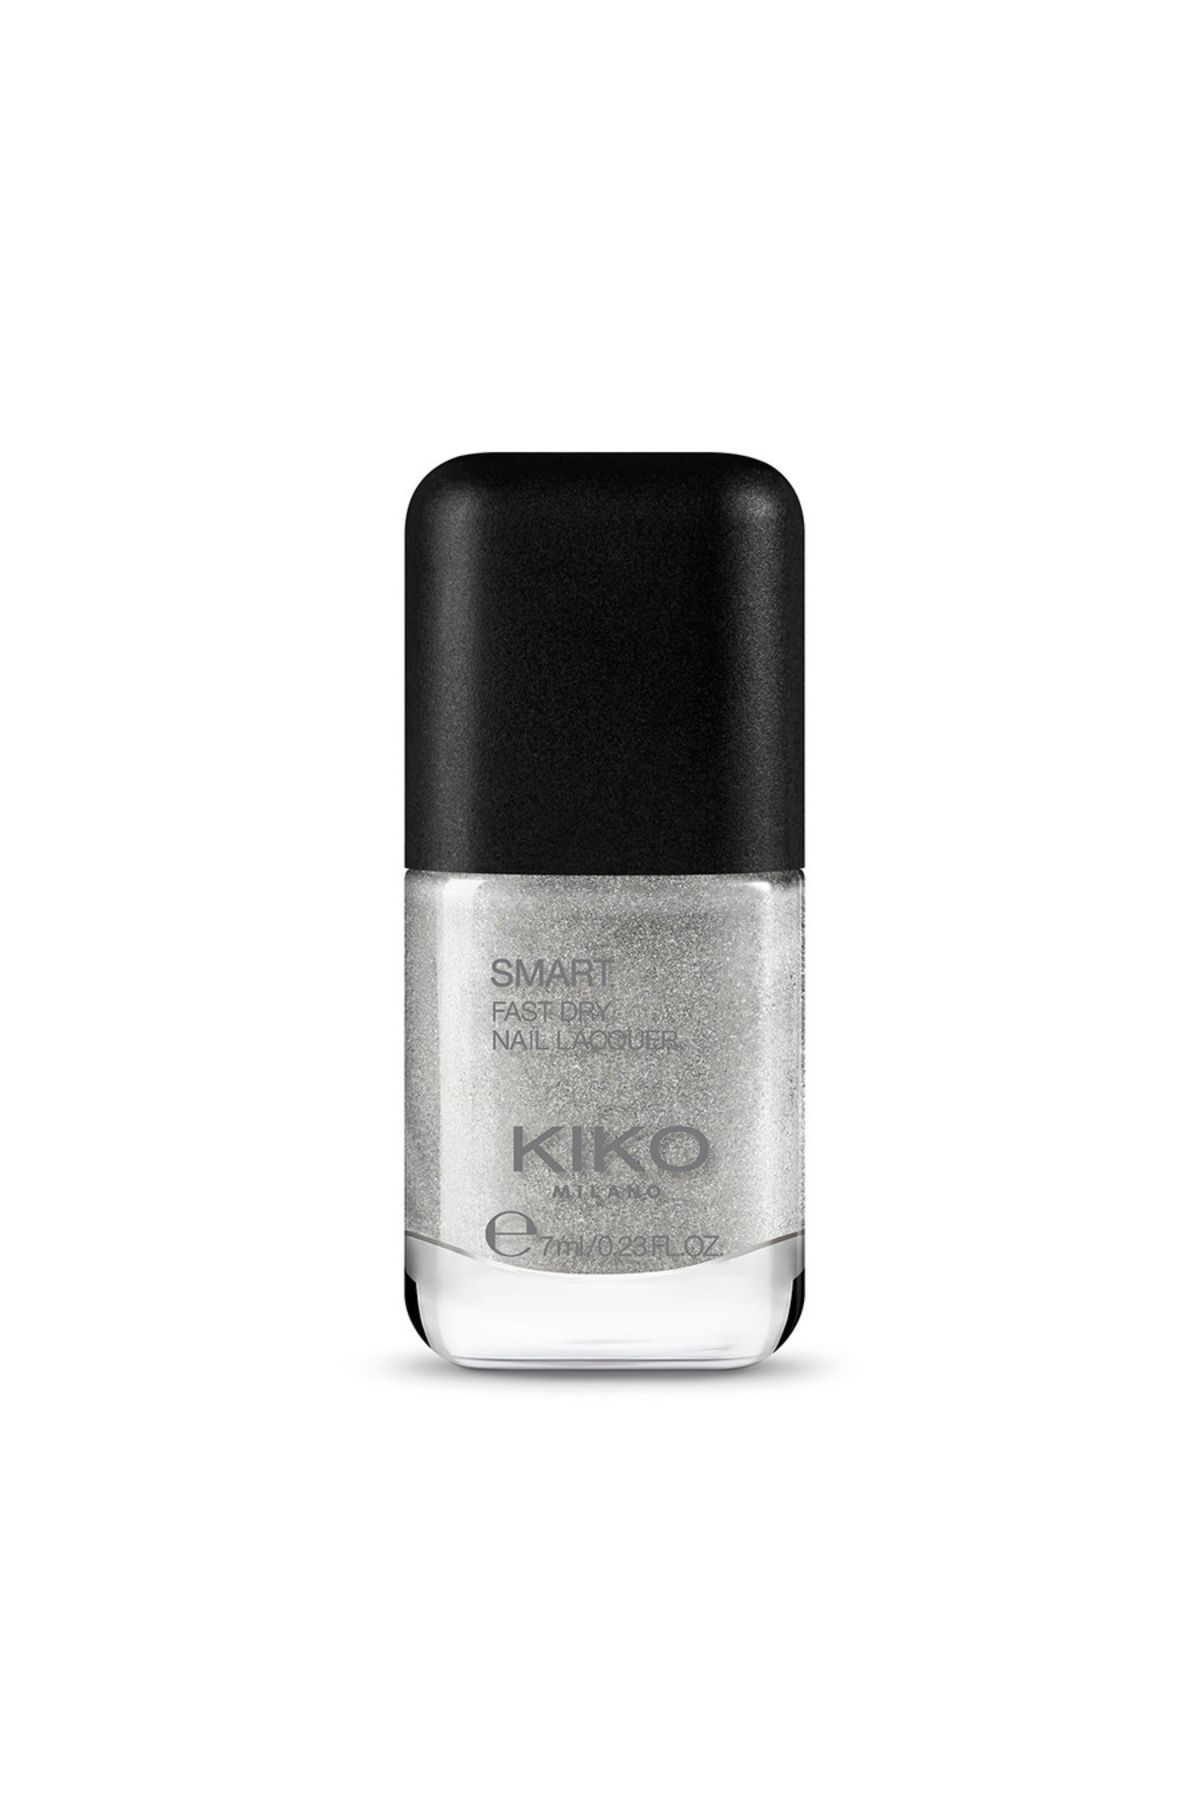 KIKO Oje - Smart Nail Lacquer 43 Silver